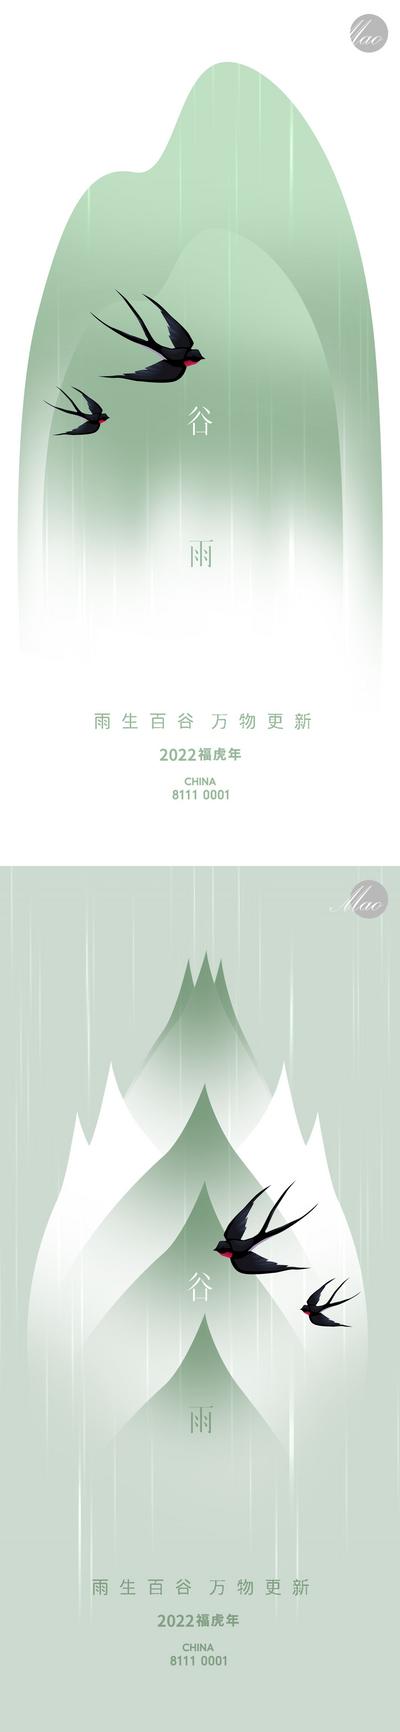 【南门网】广告 海报 创意 谷雨 节气 燕子 极简 创意 